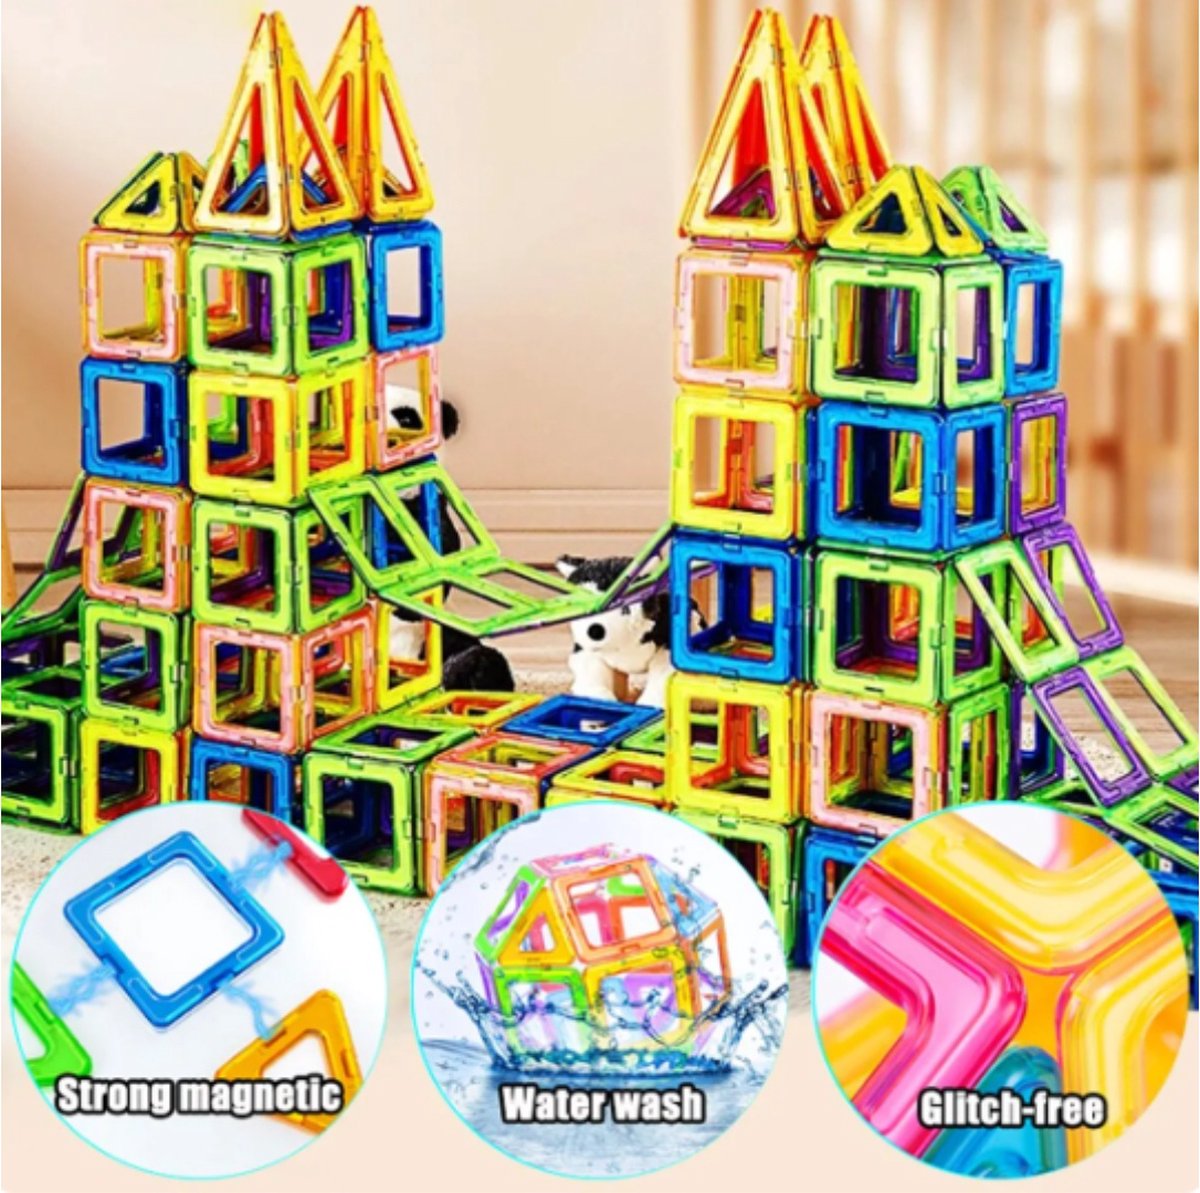 Magnetisch Magnetic Tiles - Magnetisch Speelgoed – 100 stuks - Constructie speelgoed - Magnetische tegels - Montessori speelgoed